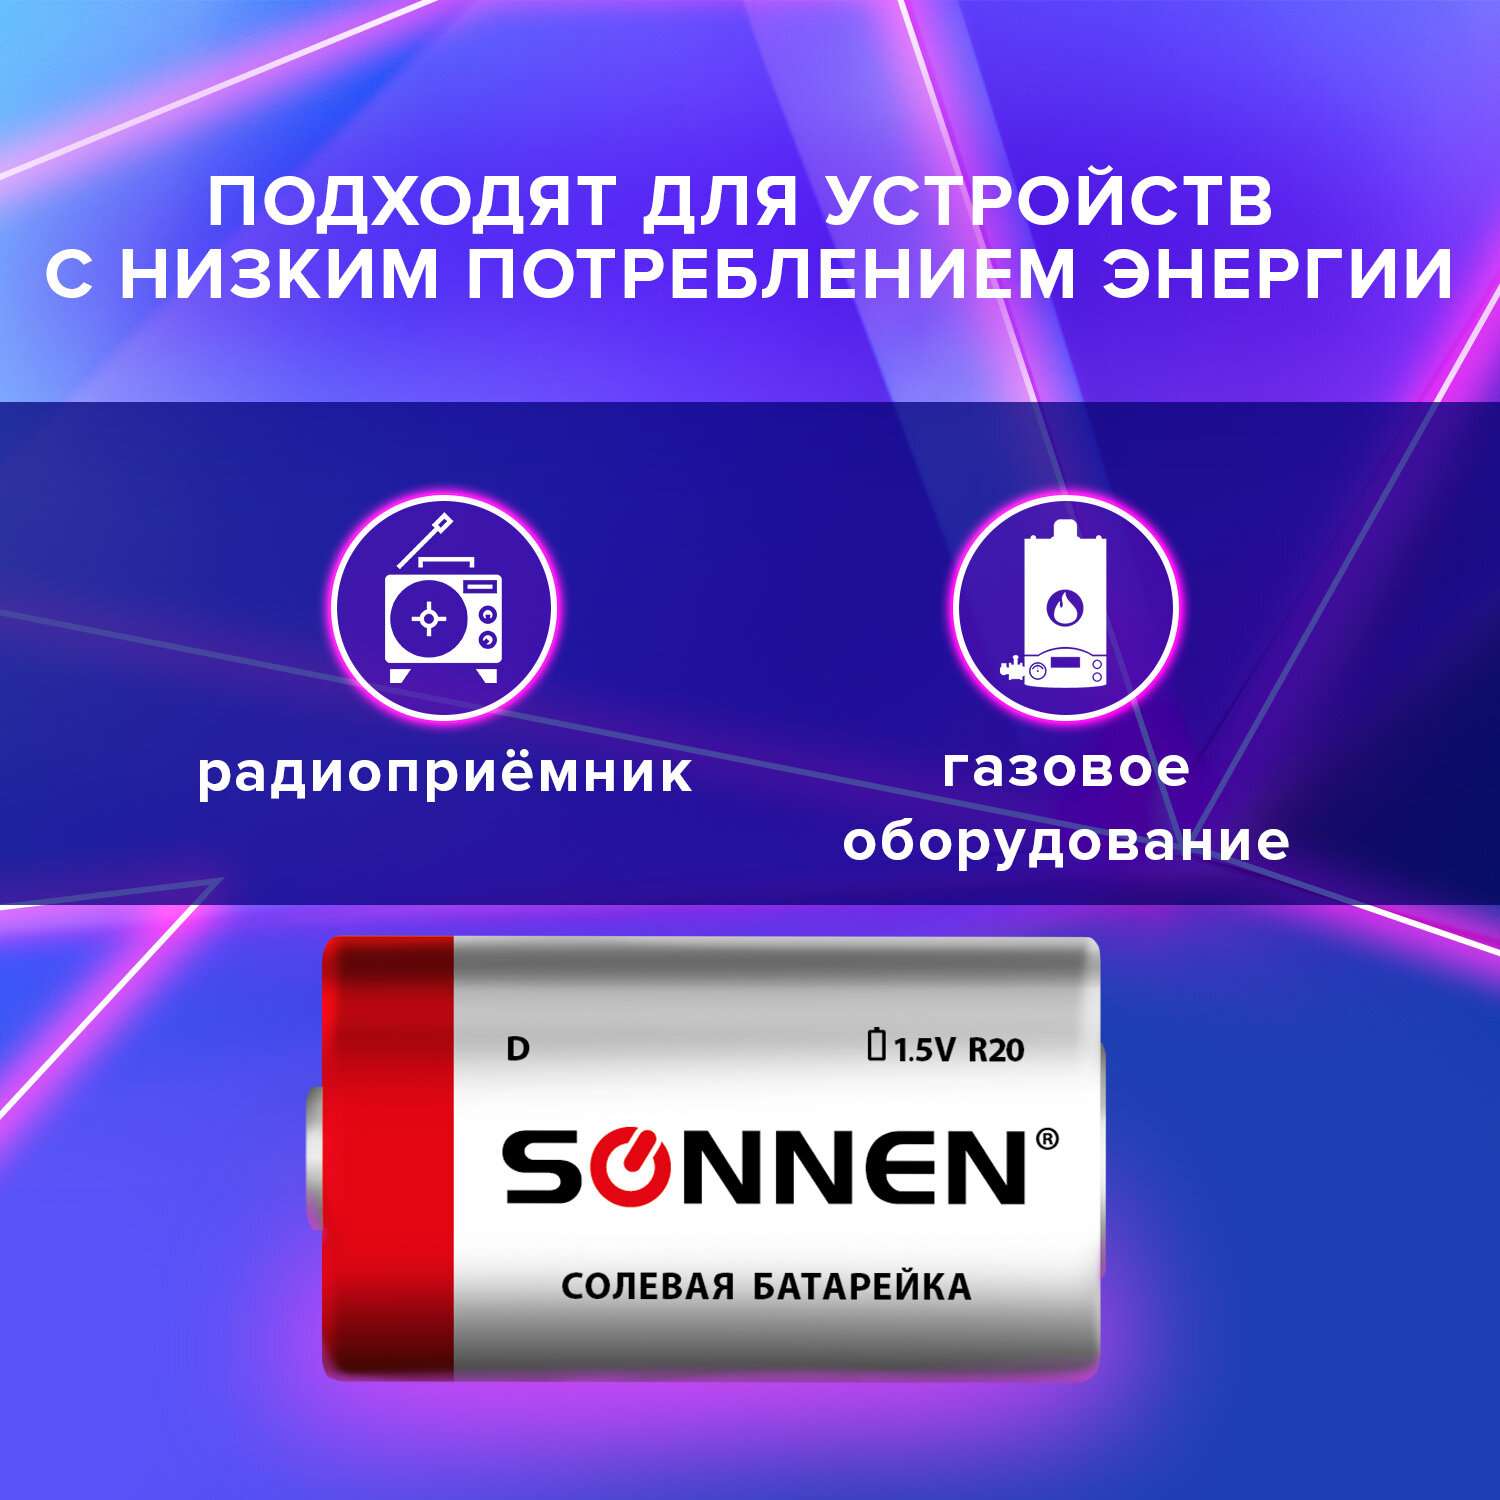 Батарейки Sonnen элементы питания солевые тип D 2 штуки для часов радио игрушек весов - фото 2